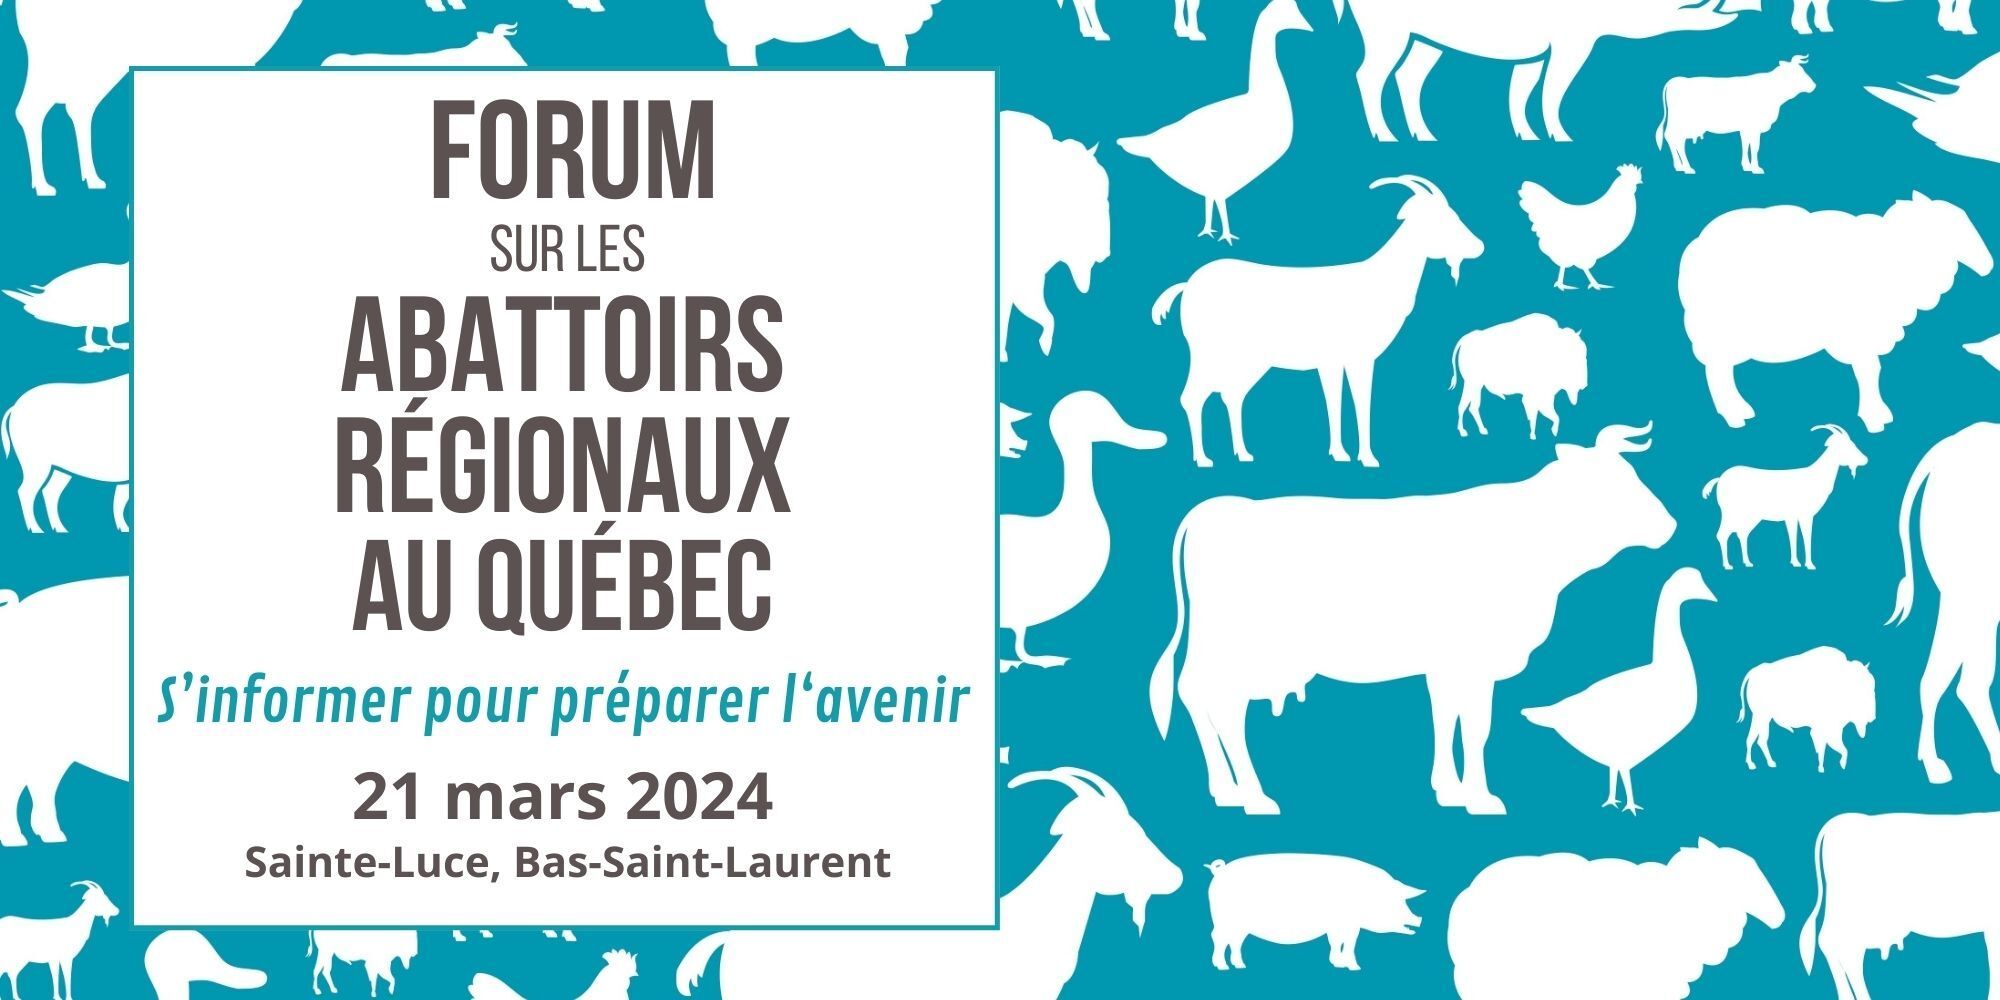 Forum sur les abattoirs régionaux au Québec : S'informer pour préparer l'avenir